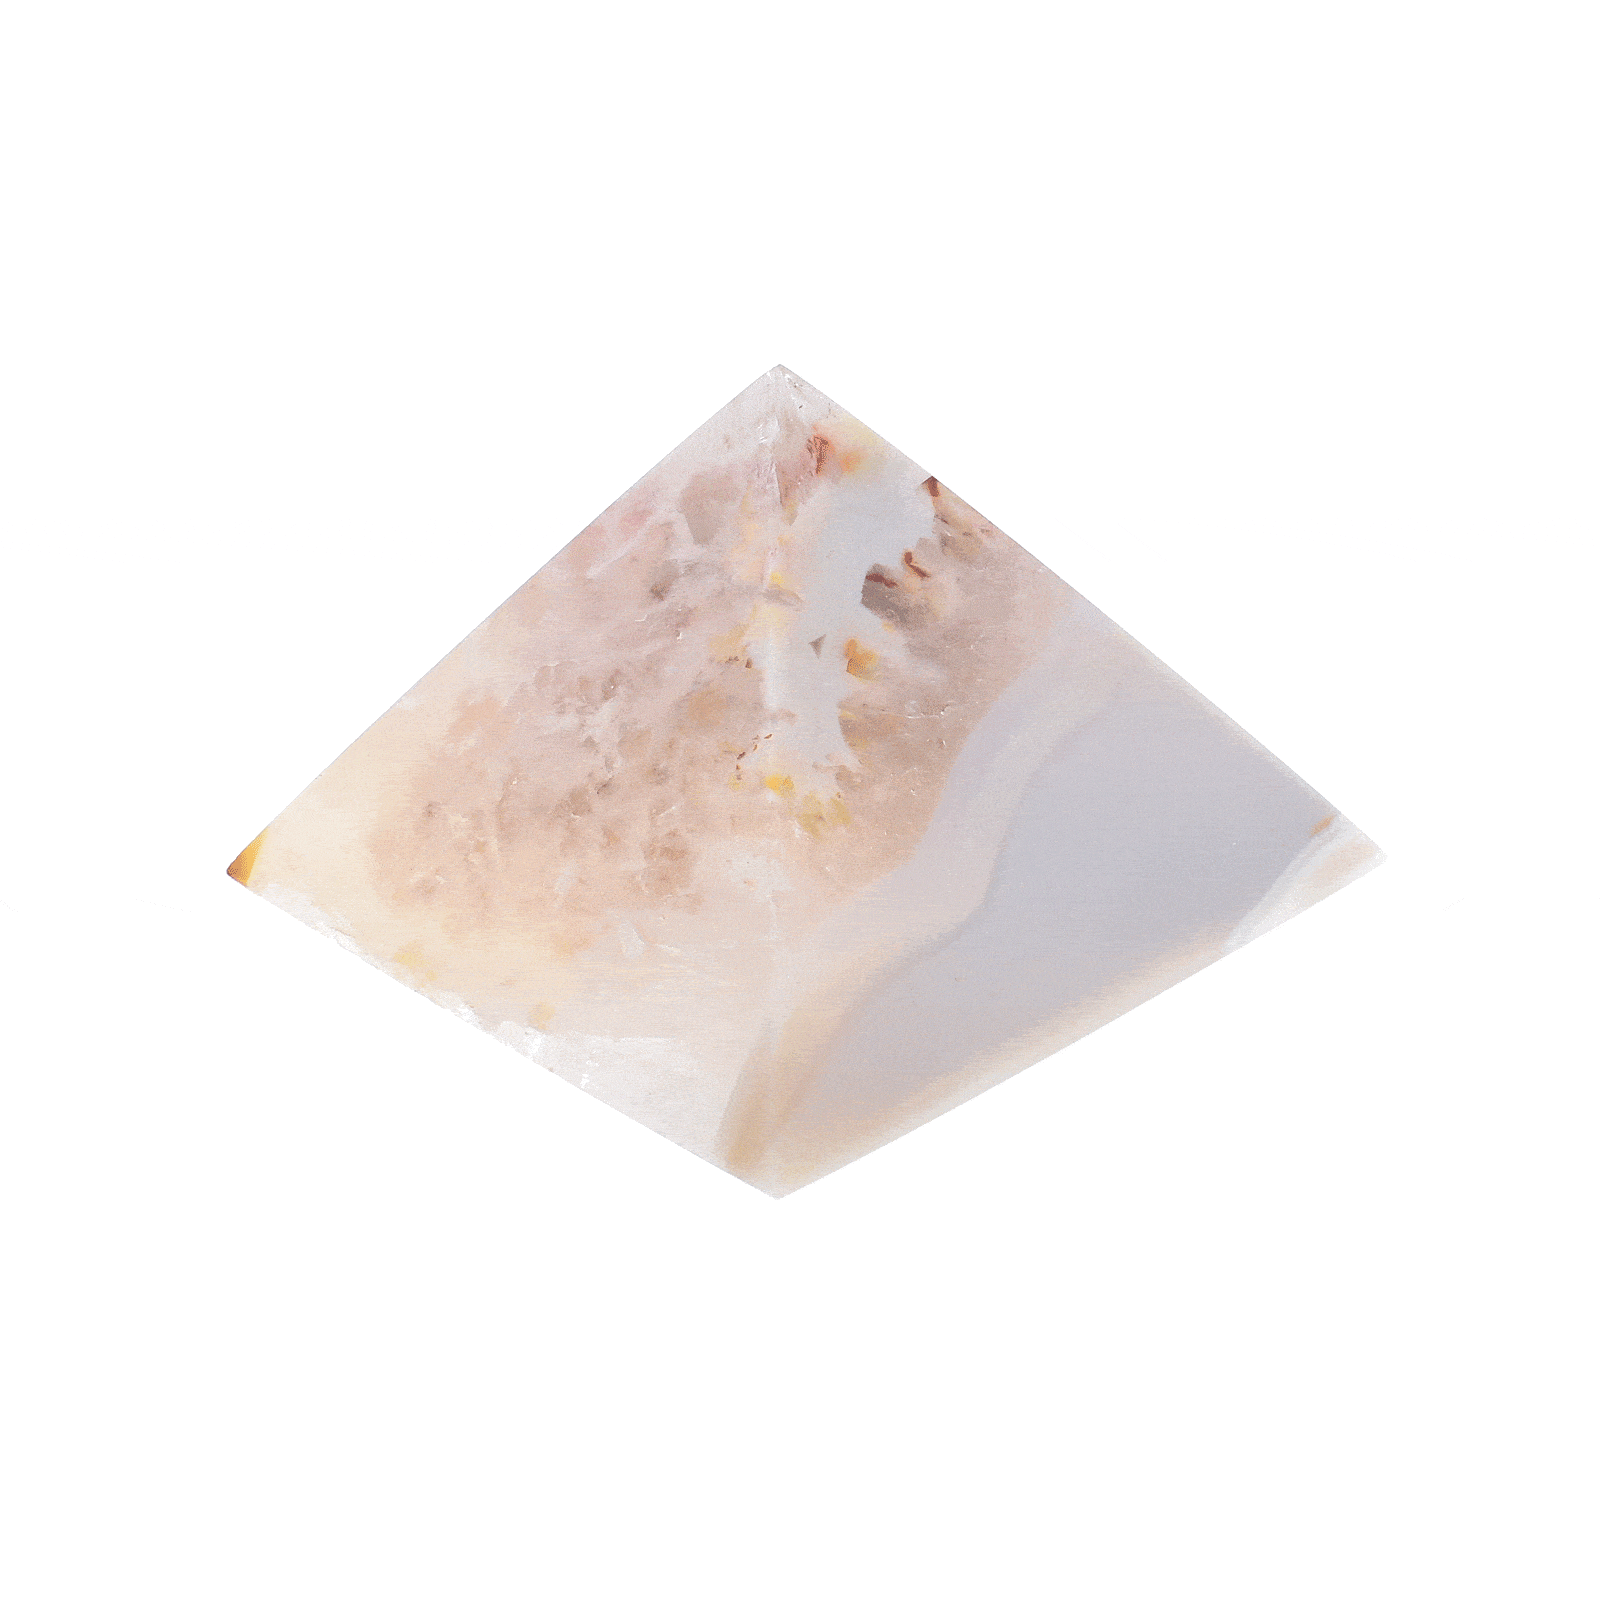 Φυσική πέτρα Αχάτη με χαλαζία, σε σχήμα πυραμίδας ύψους 4cm. Αγοράστε online shop.